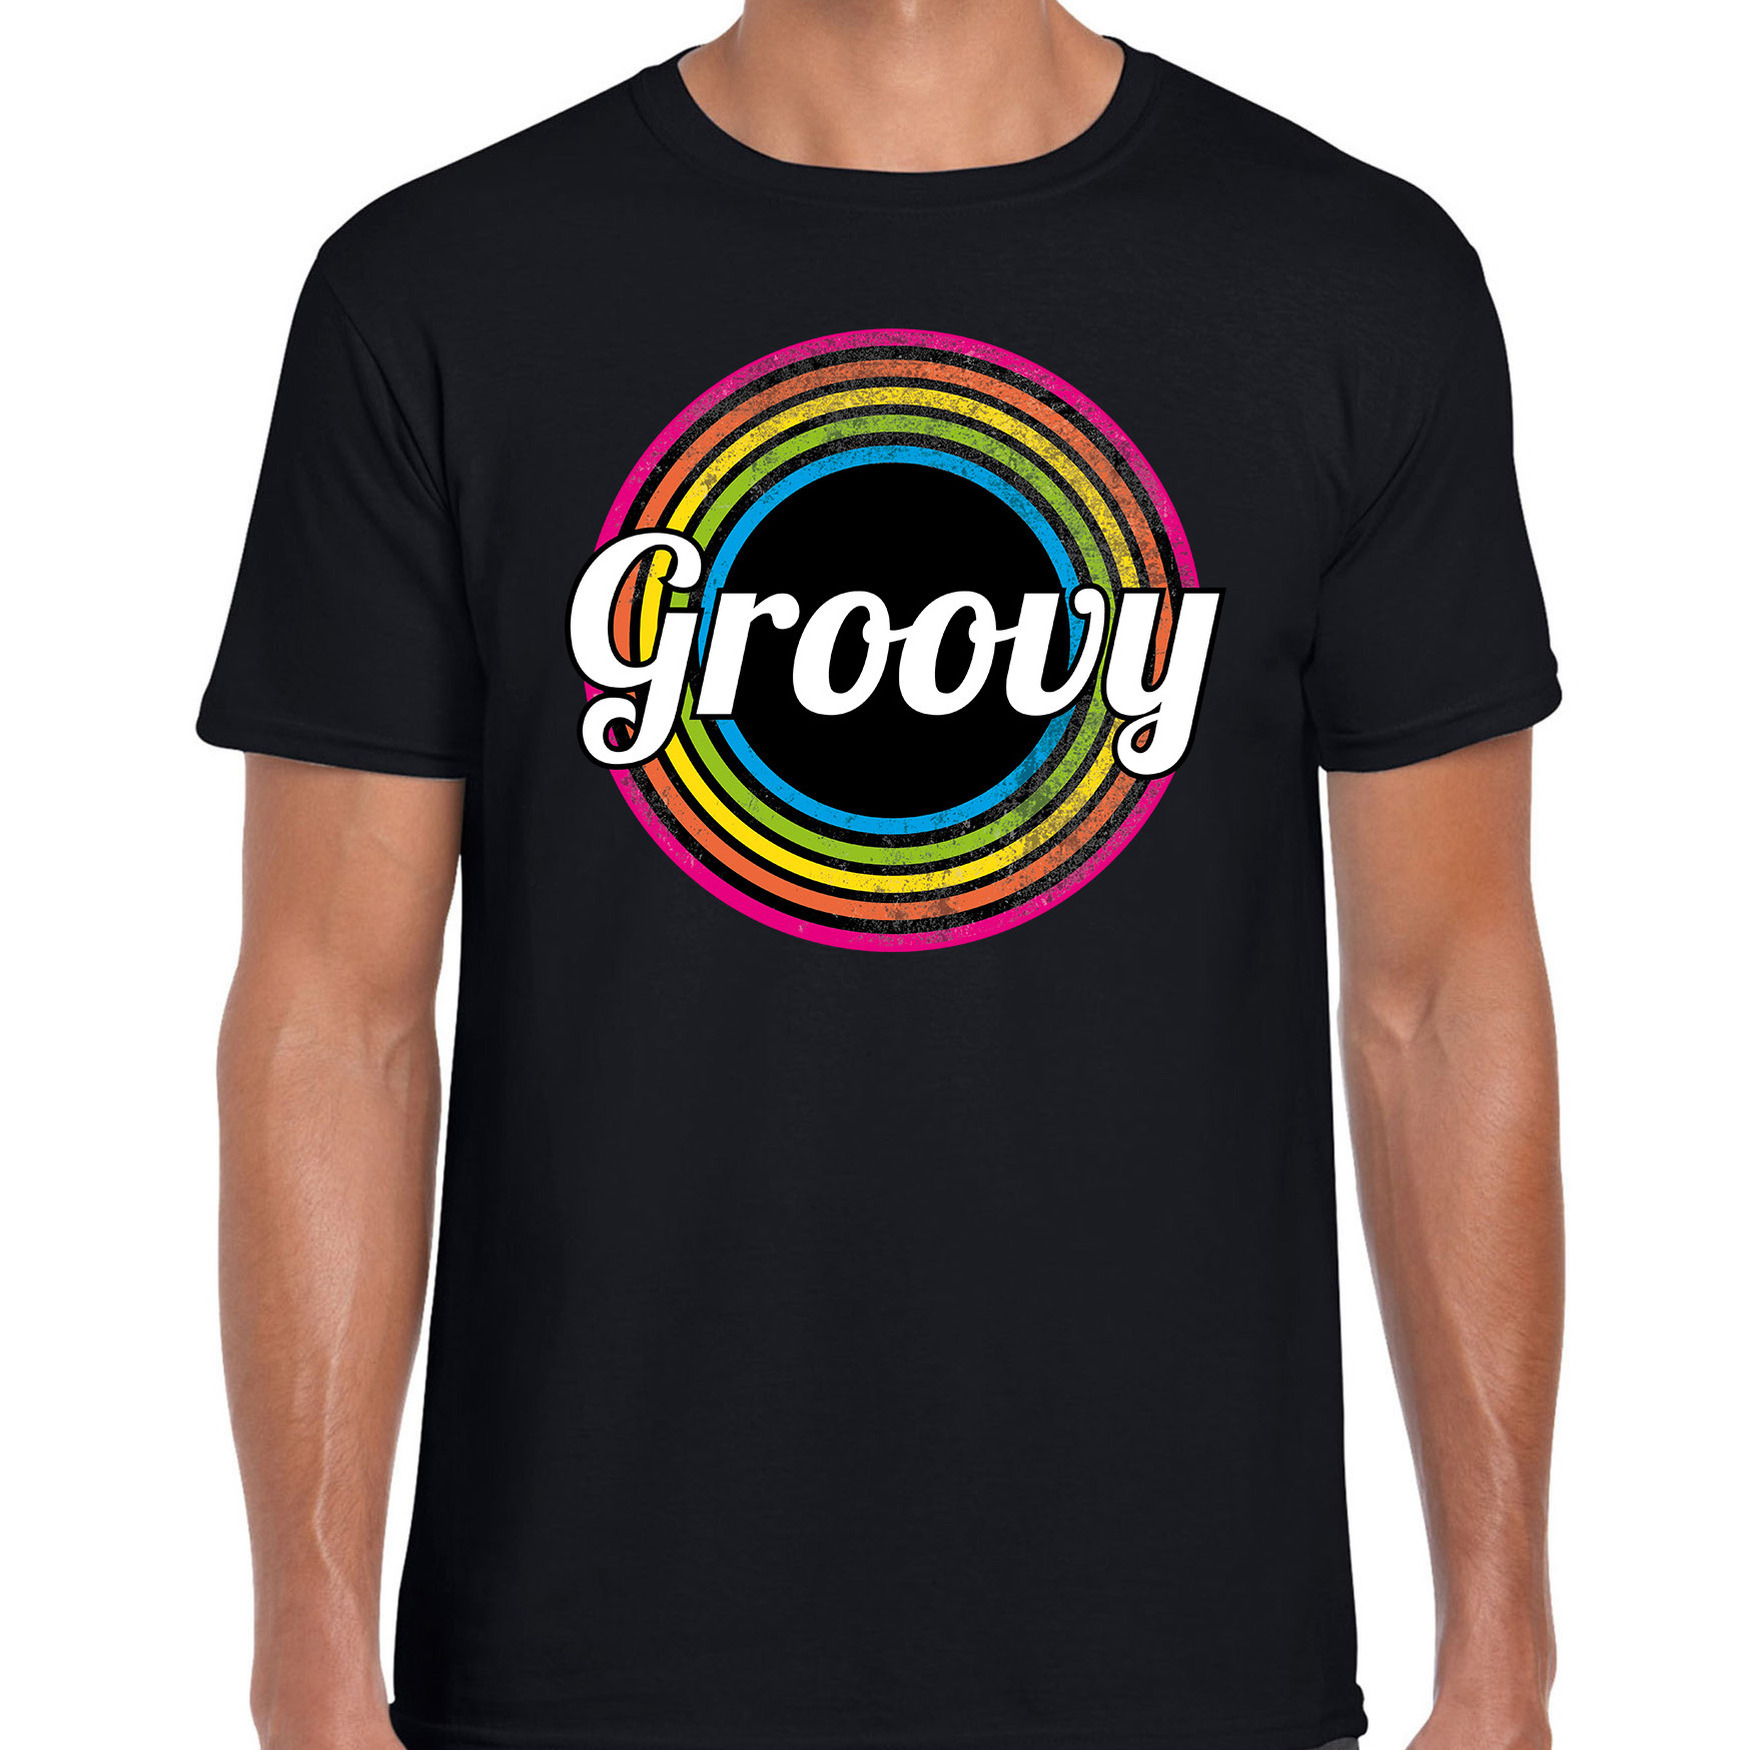 Groovy verkleed t-shirt zwart voor heren - 70s, 80s party verkleed outfit